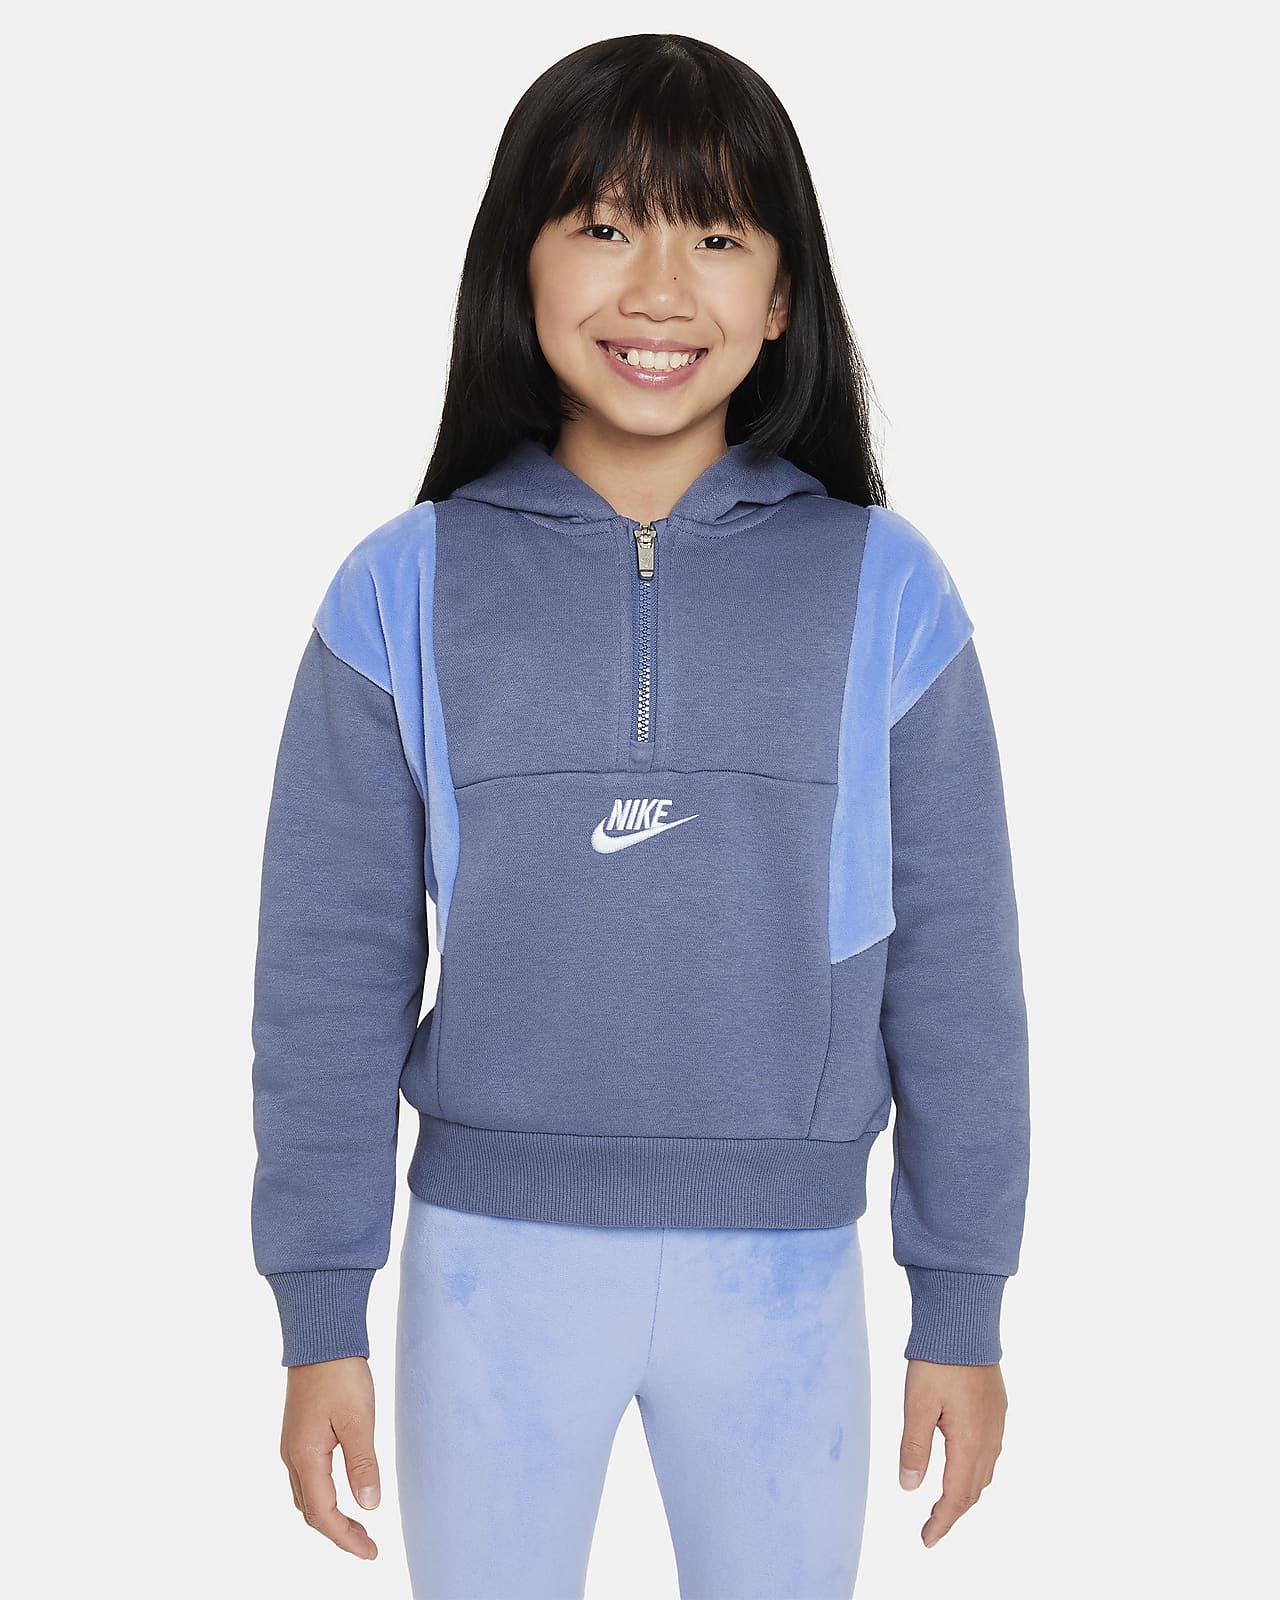 Nike KIDS AIR Hoodie Sweatshirt AND Logo Side Band Leggings Set